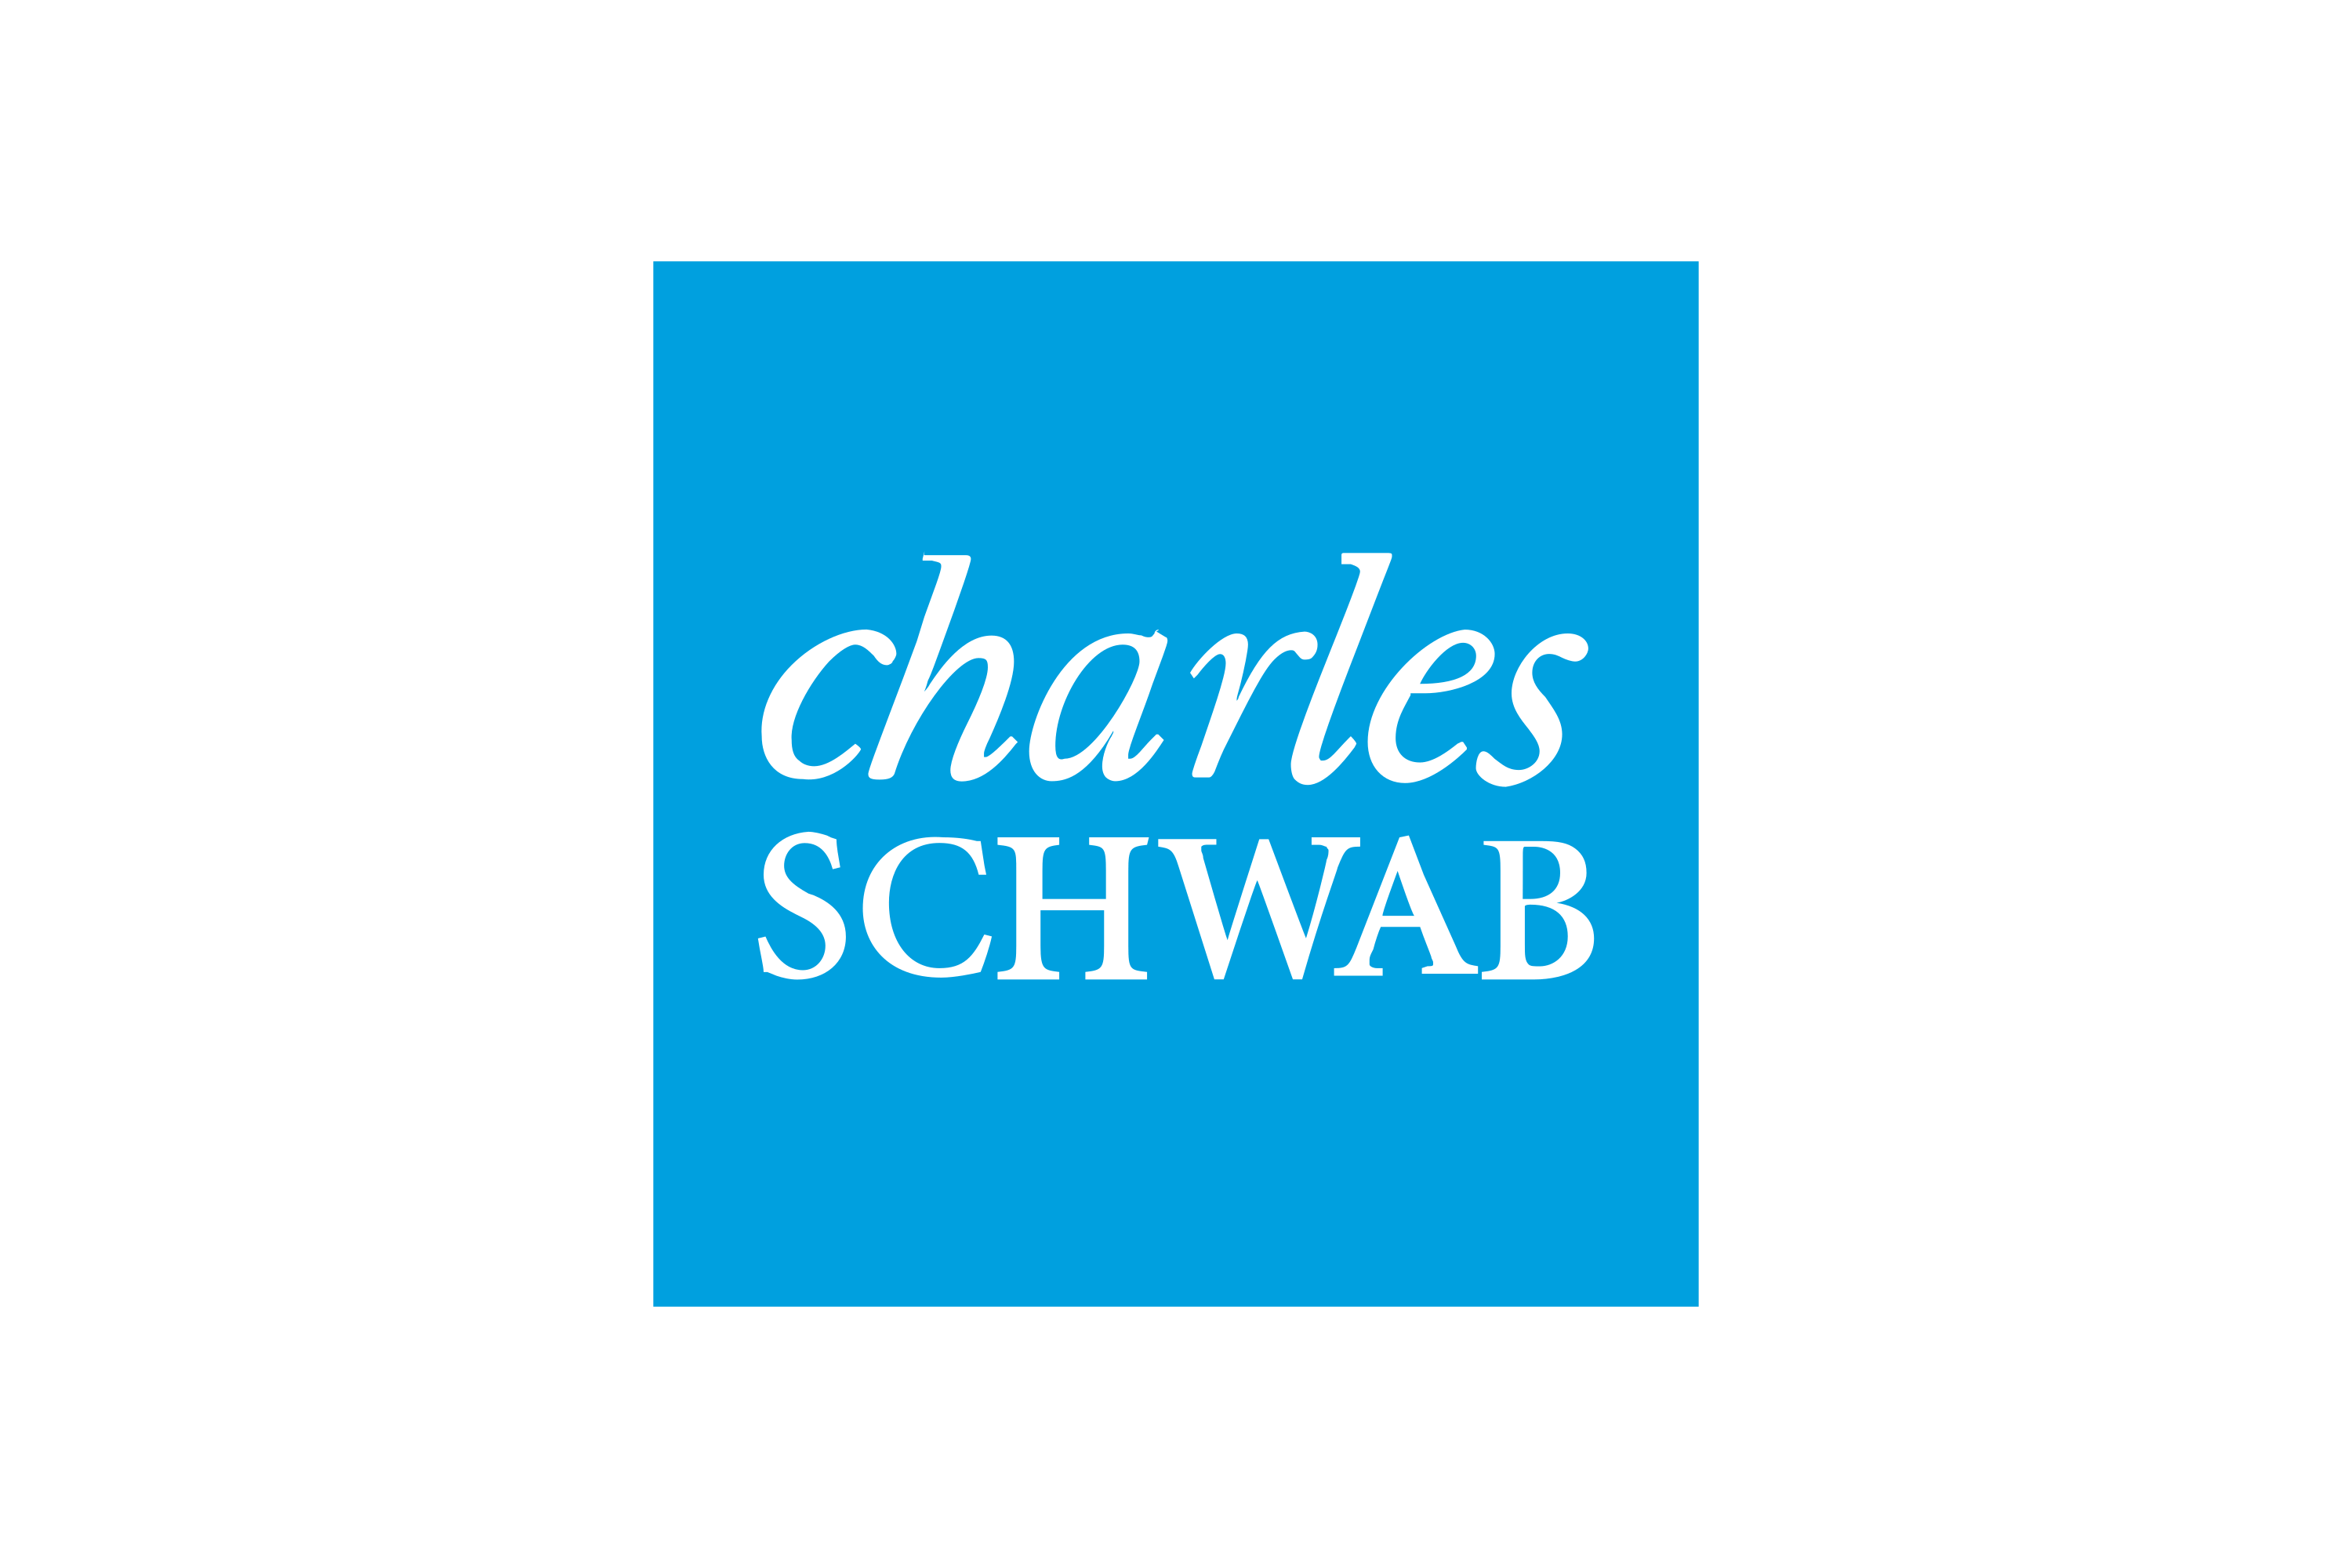 Download Charles Schwab Corporation Logo in SVG Vector or PNG File